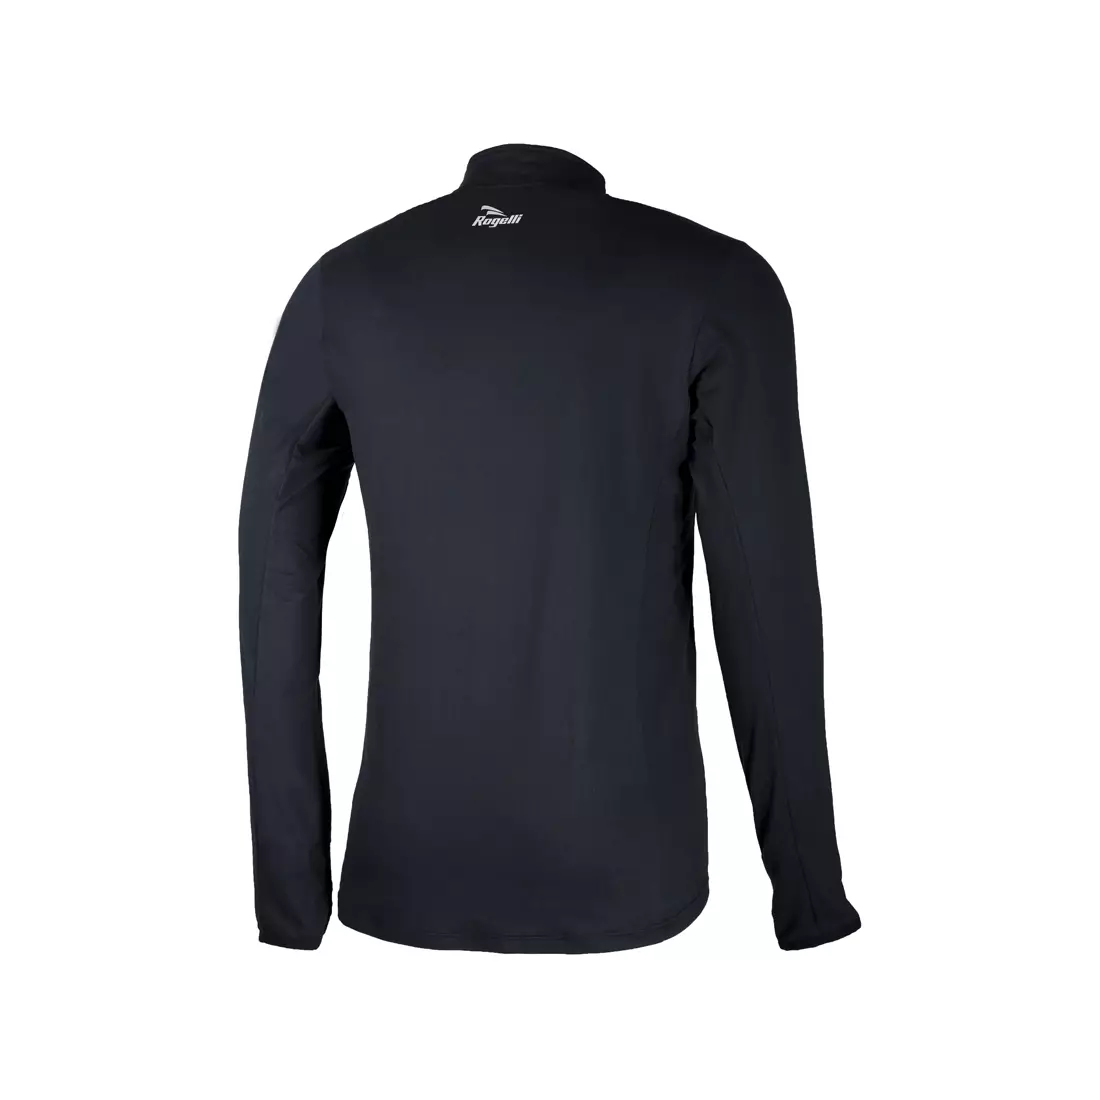 ROGELLI CAMPTON 2.0 černé běžecké tričko s dlouhým rukávem